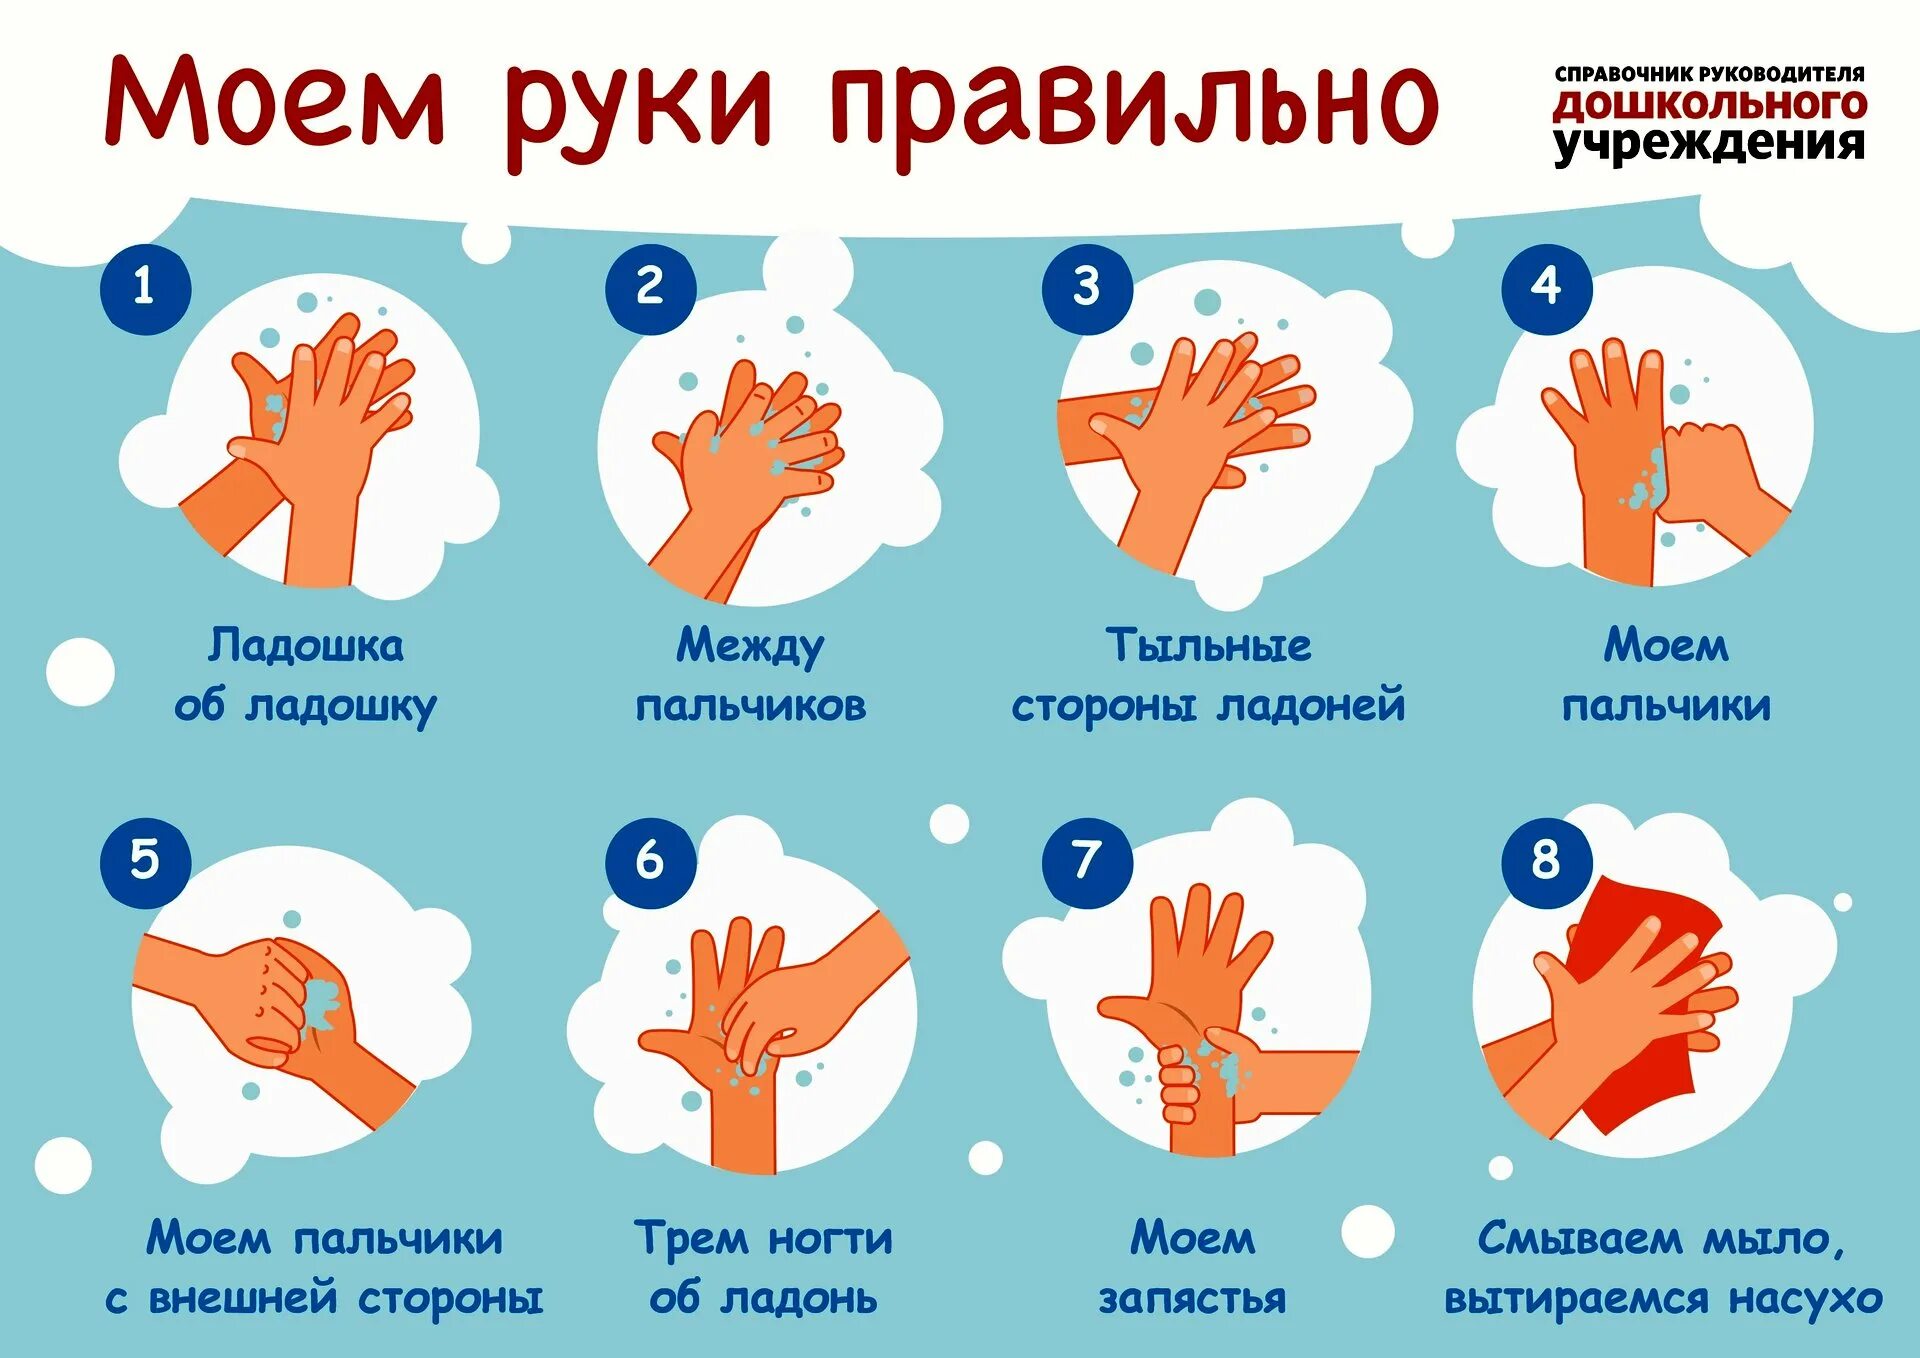 Мою руки 3 минуты. Мытьё рук. Алгоритм мытья рук. Памятка мытье рук для детей. Как правильн Оымт ьруки. КККМ правильн омыть руки.